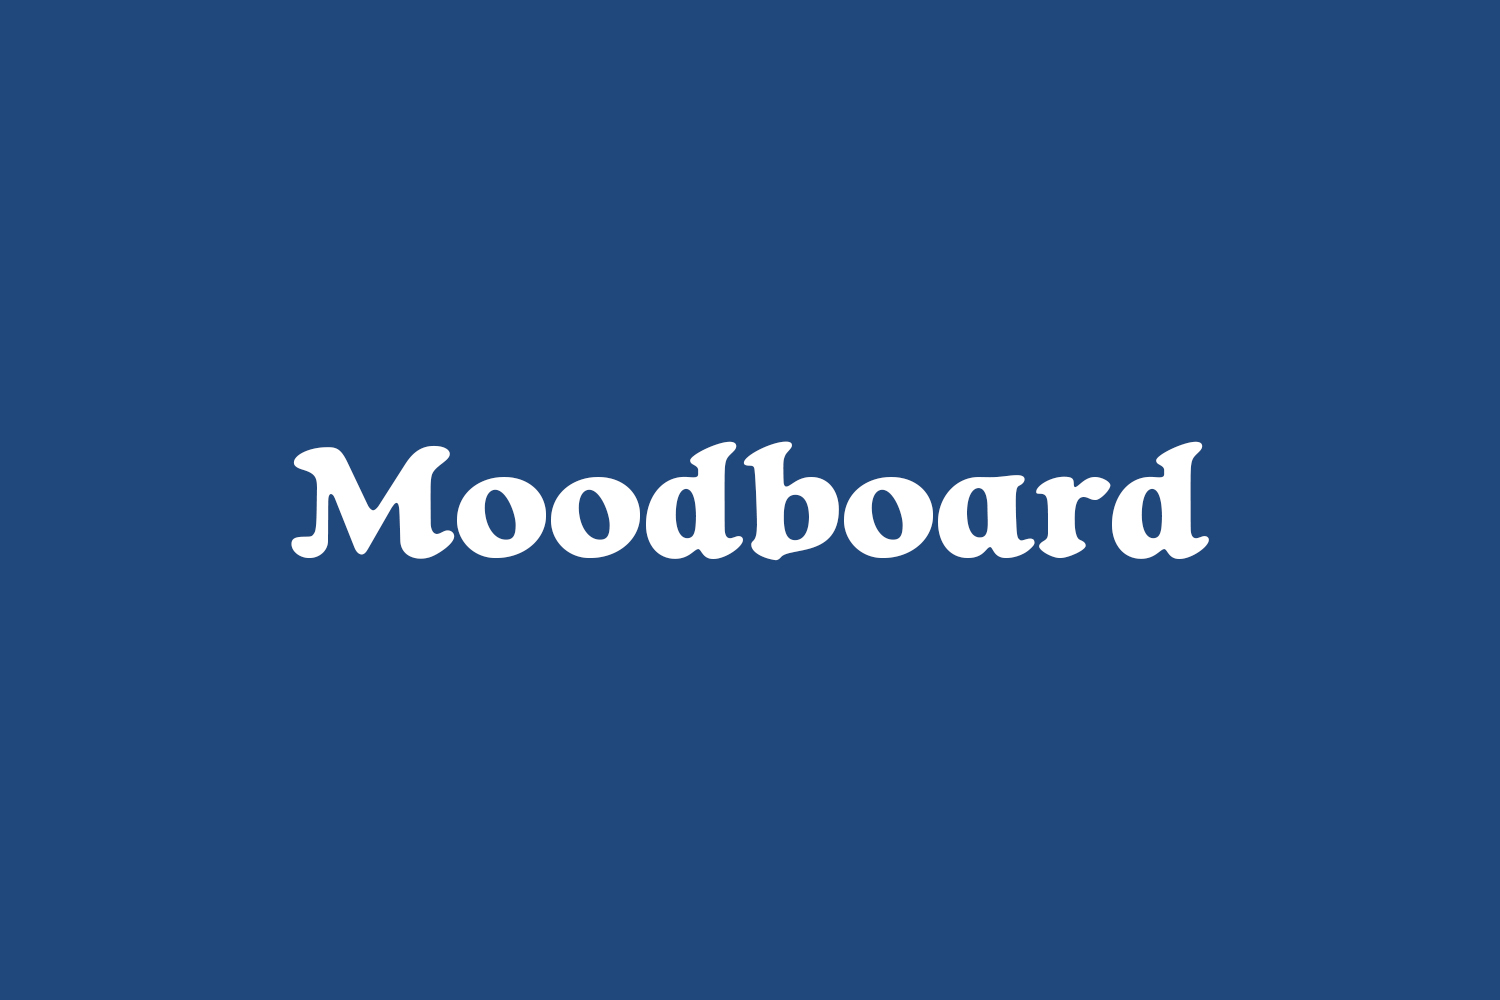 Moodboard Free Font